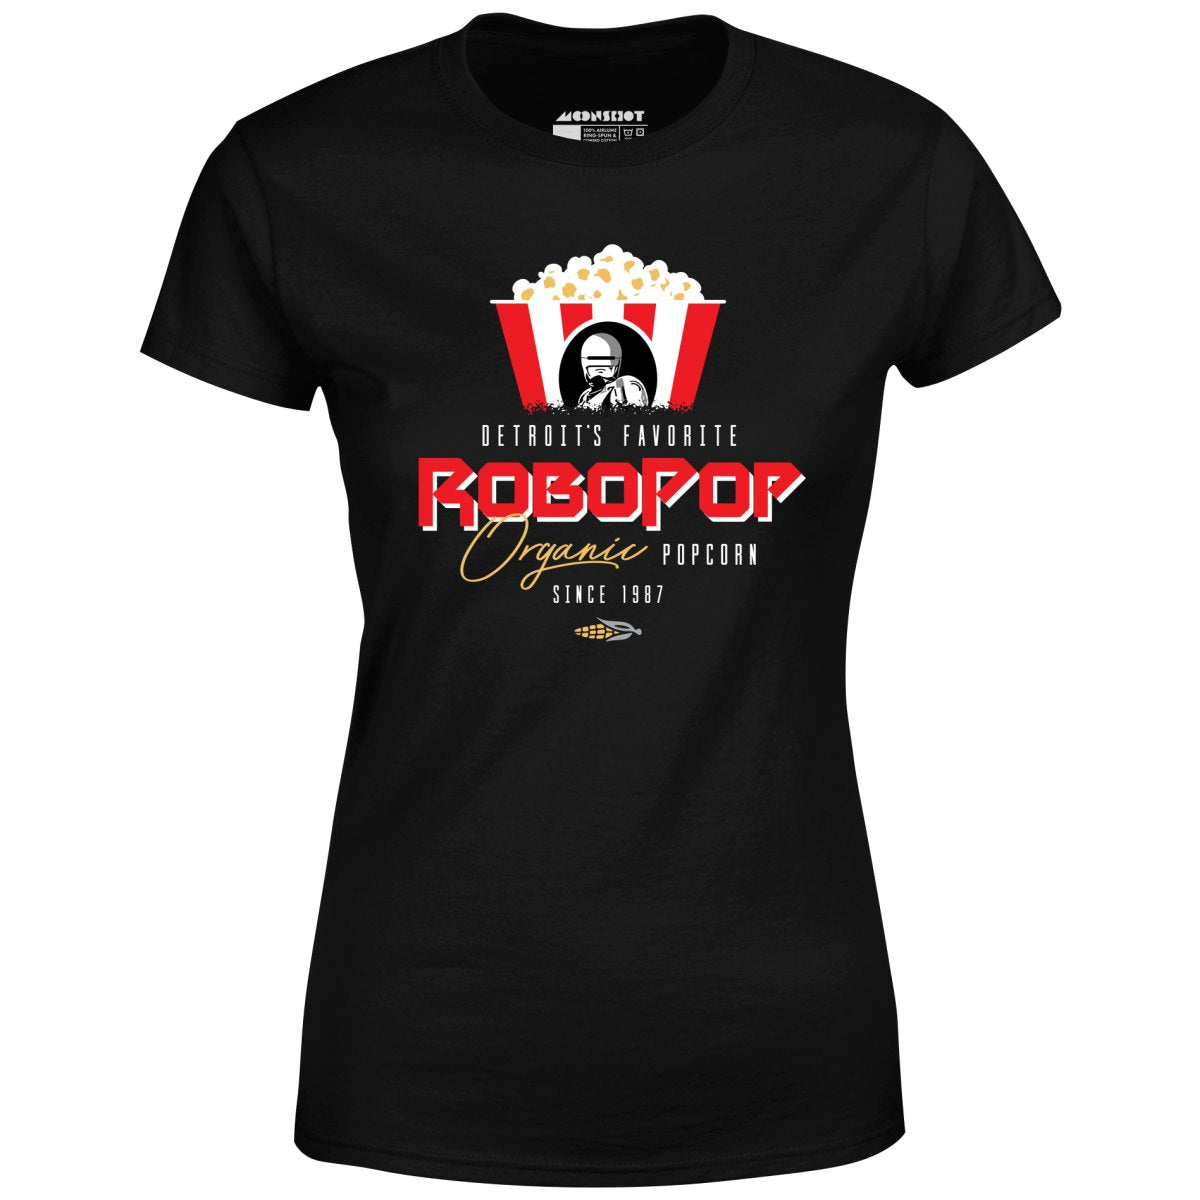 Robopop Organic Popcorn - Women's T-Shirt